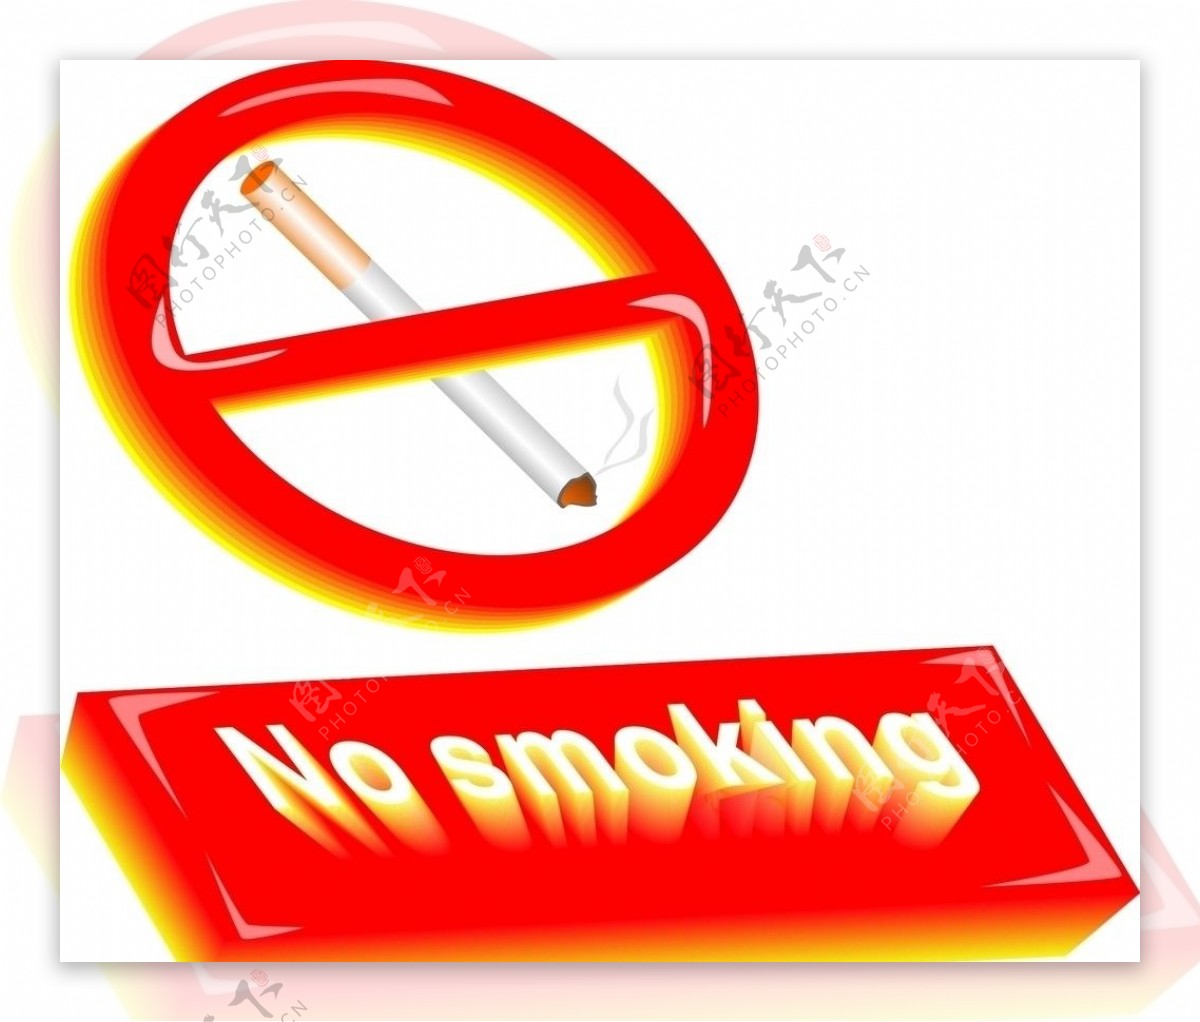 有质感的禁止吸烟标志图片